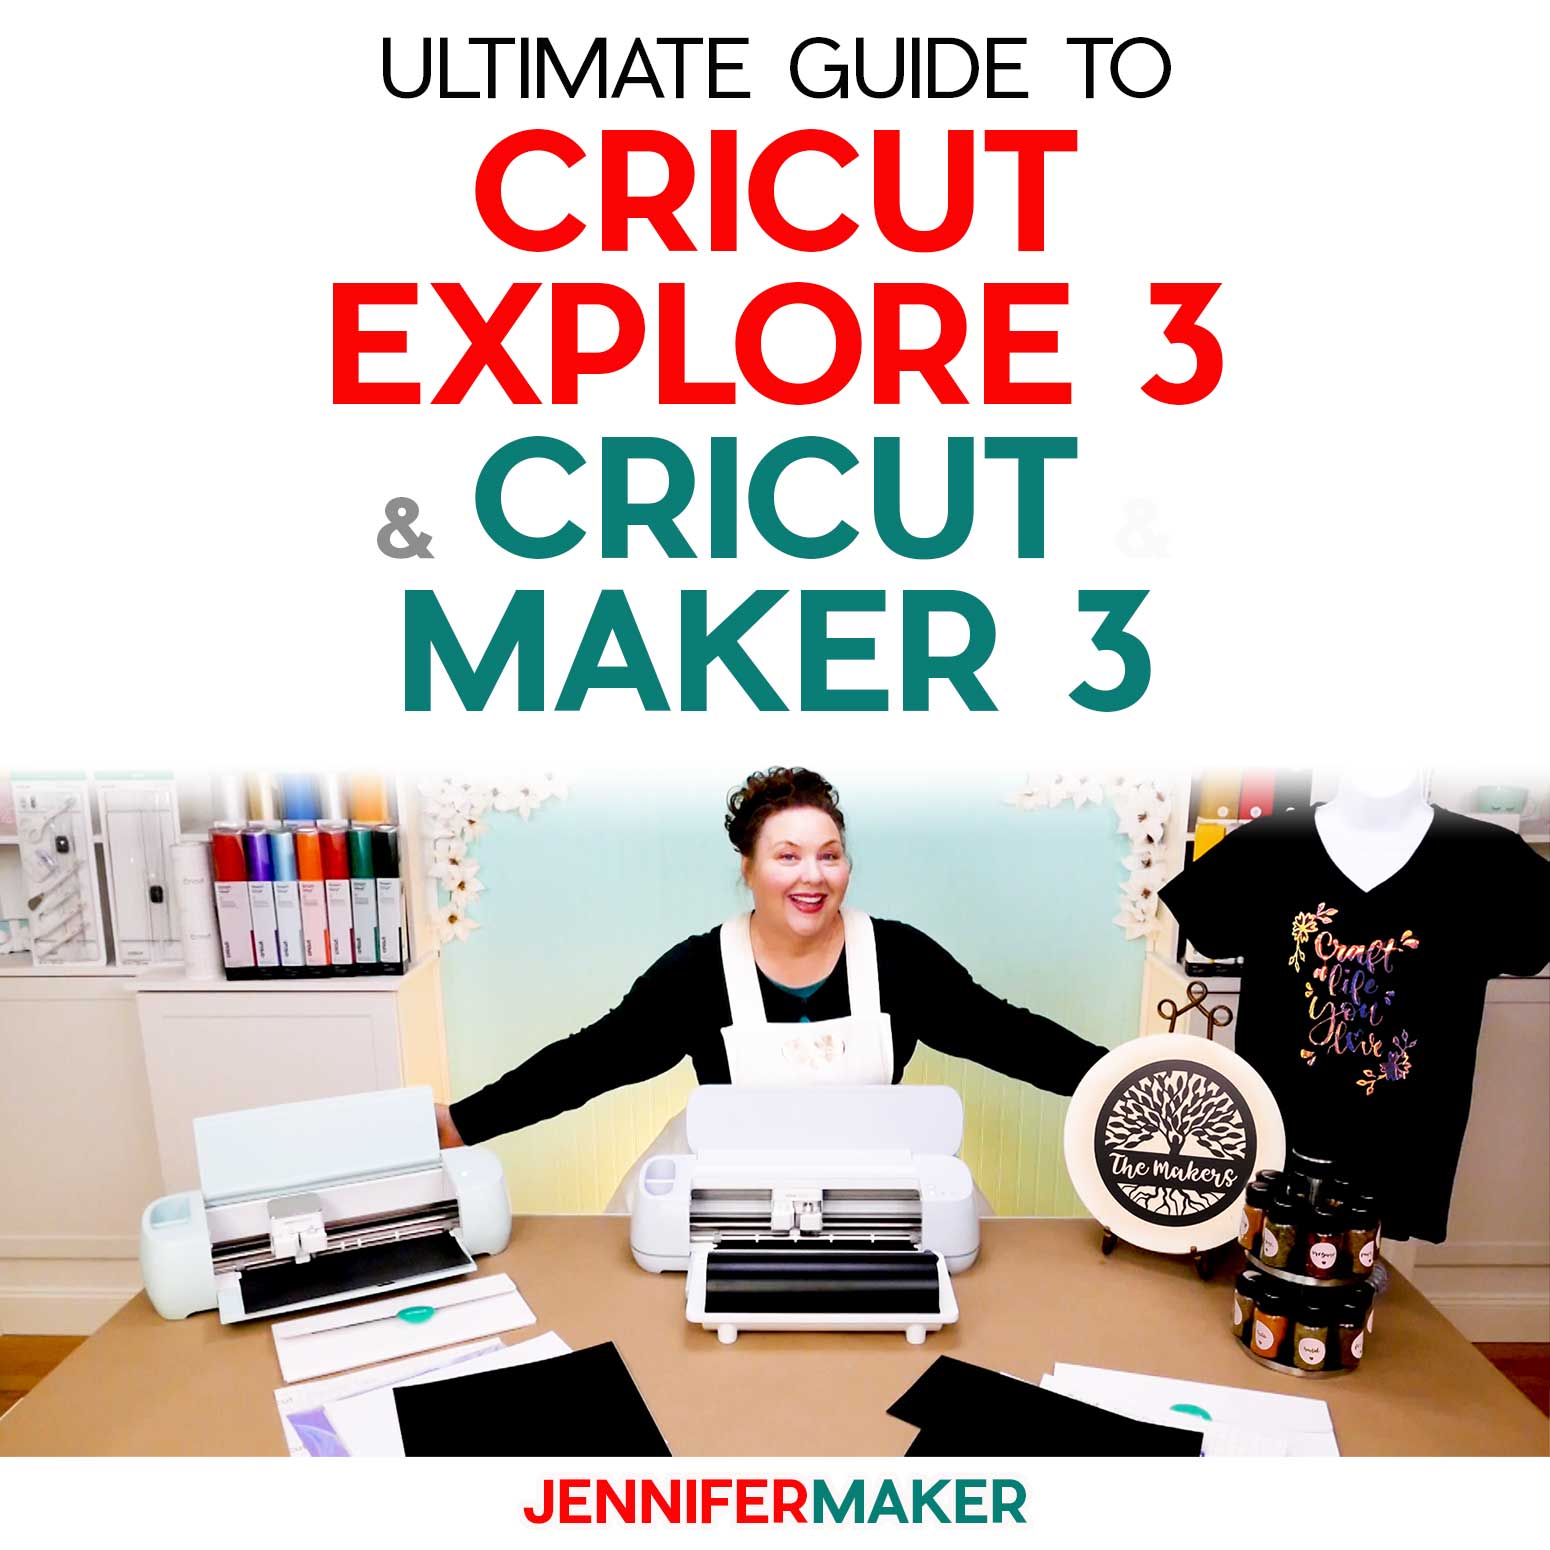 Cricut Explore 3 & Maker 3 Ultimate Guide to Cricut Cutting Machines